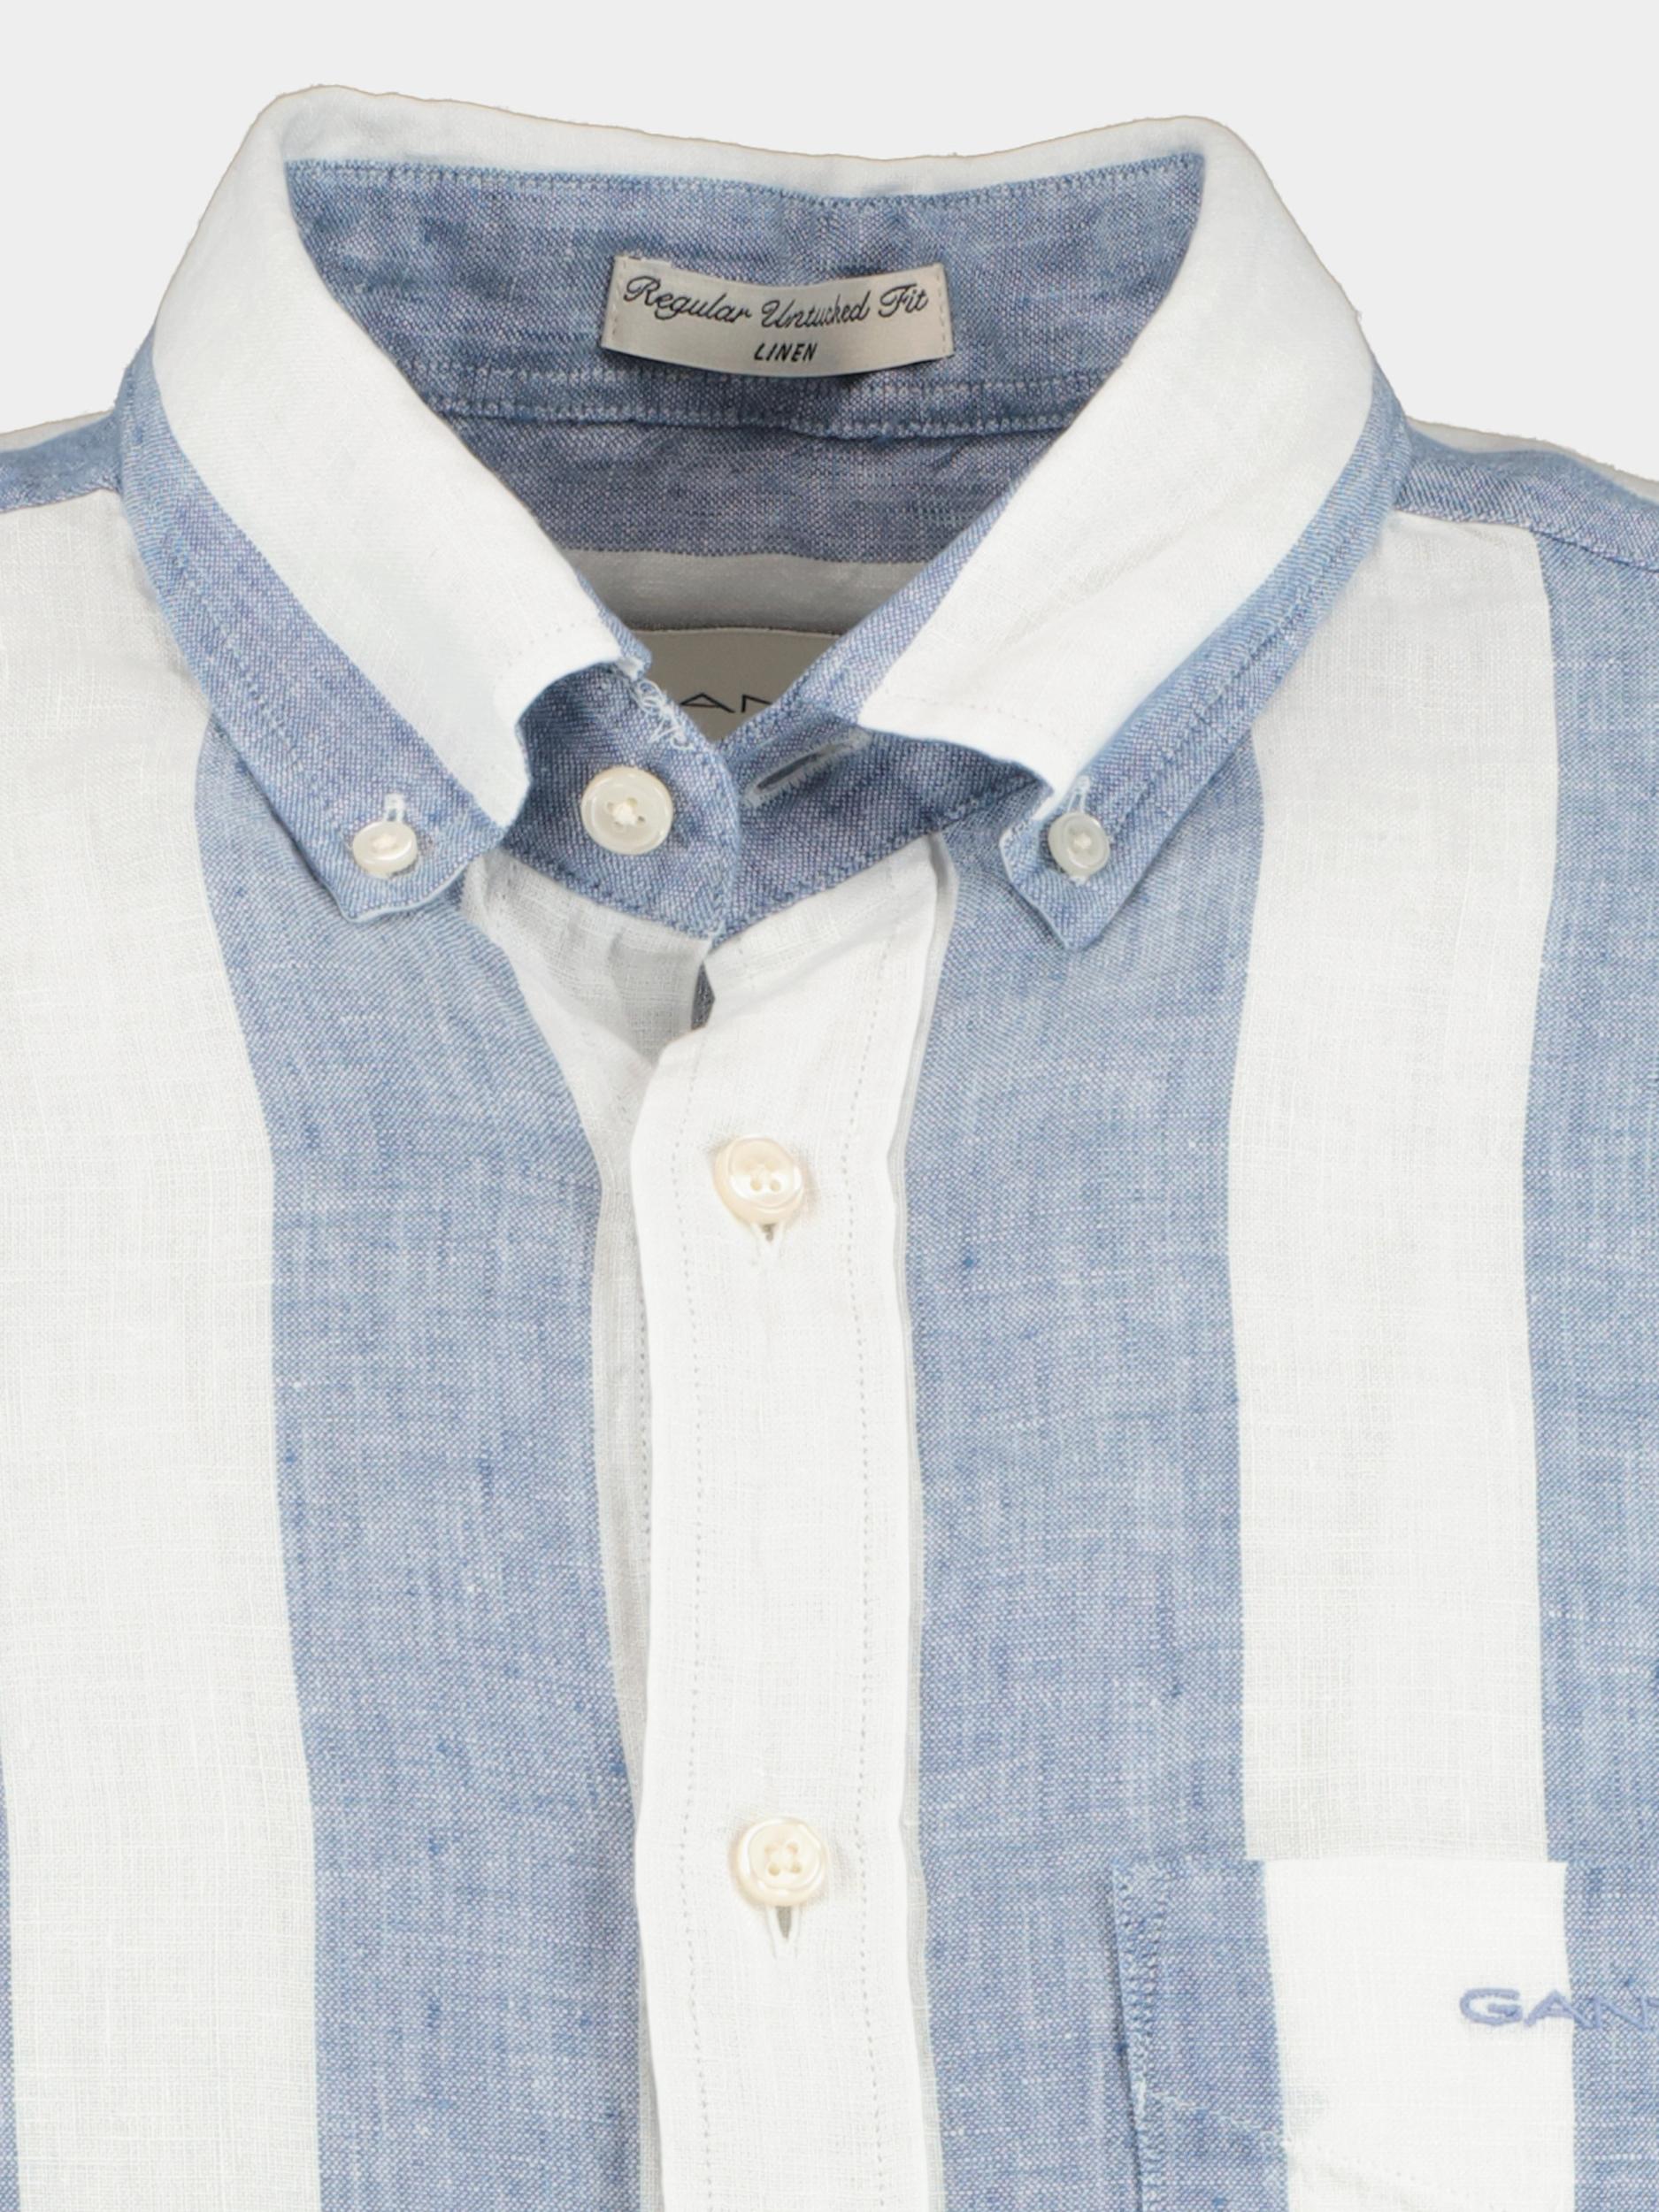 Gant Casual hemd lange mouw Blauw Bold Stripe Linen Shirt 3240080/464